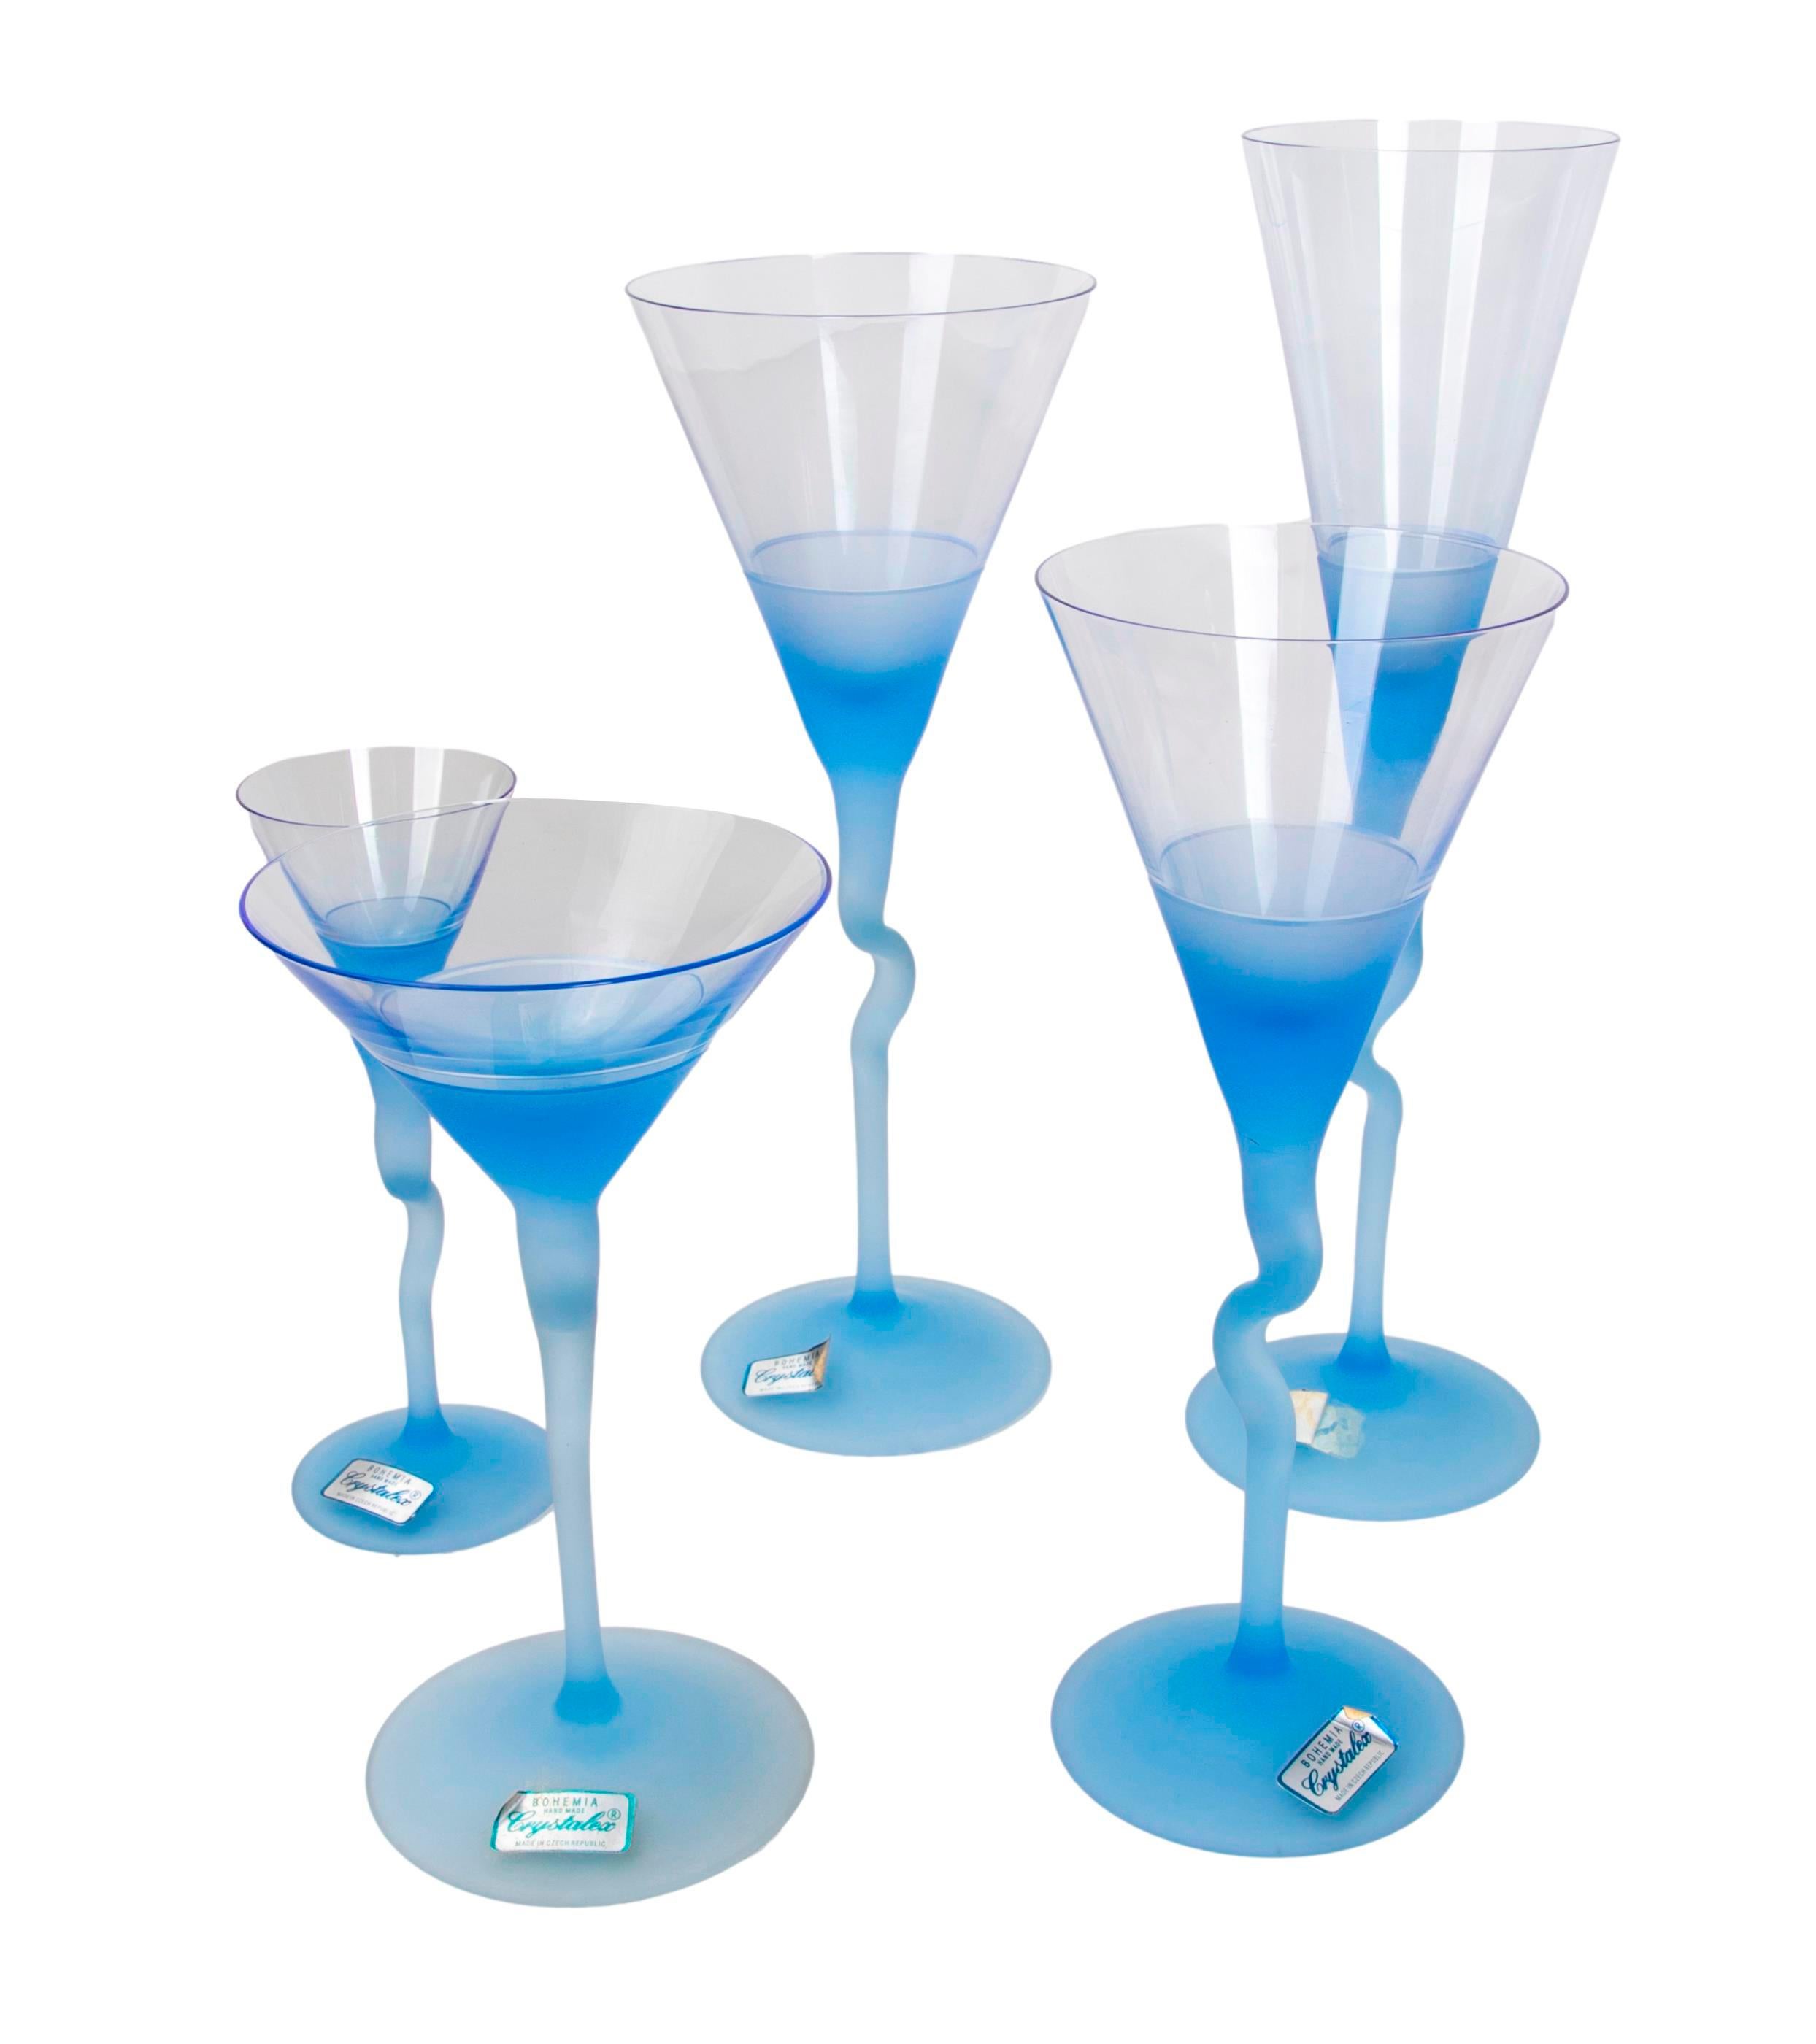 Glaswaren aus vierunddreißig Gläsern in verschiedenen Größen aus der Manufaktur „Cristalex“.
Beschreibung der Mengen mit Maßen:
6 Champagnergläser: 28x7cm
13 Gläser mit den Maßen 24x8,5 cm
4 Gläser mit den Maßen 25x9,5 cm
6 Gläser mit den Maßen